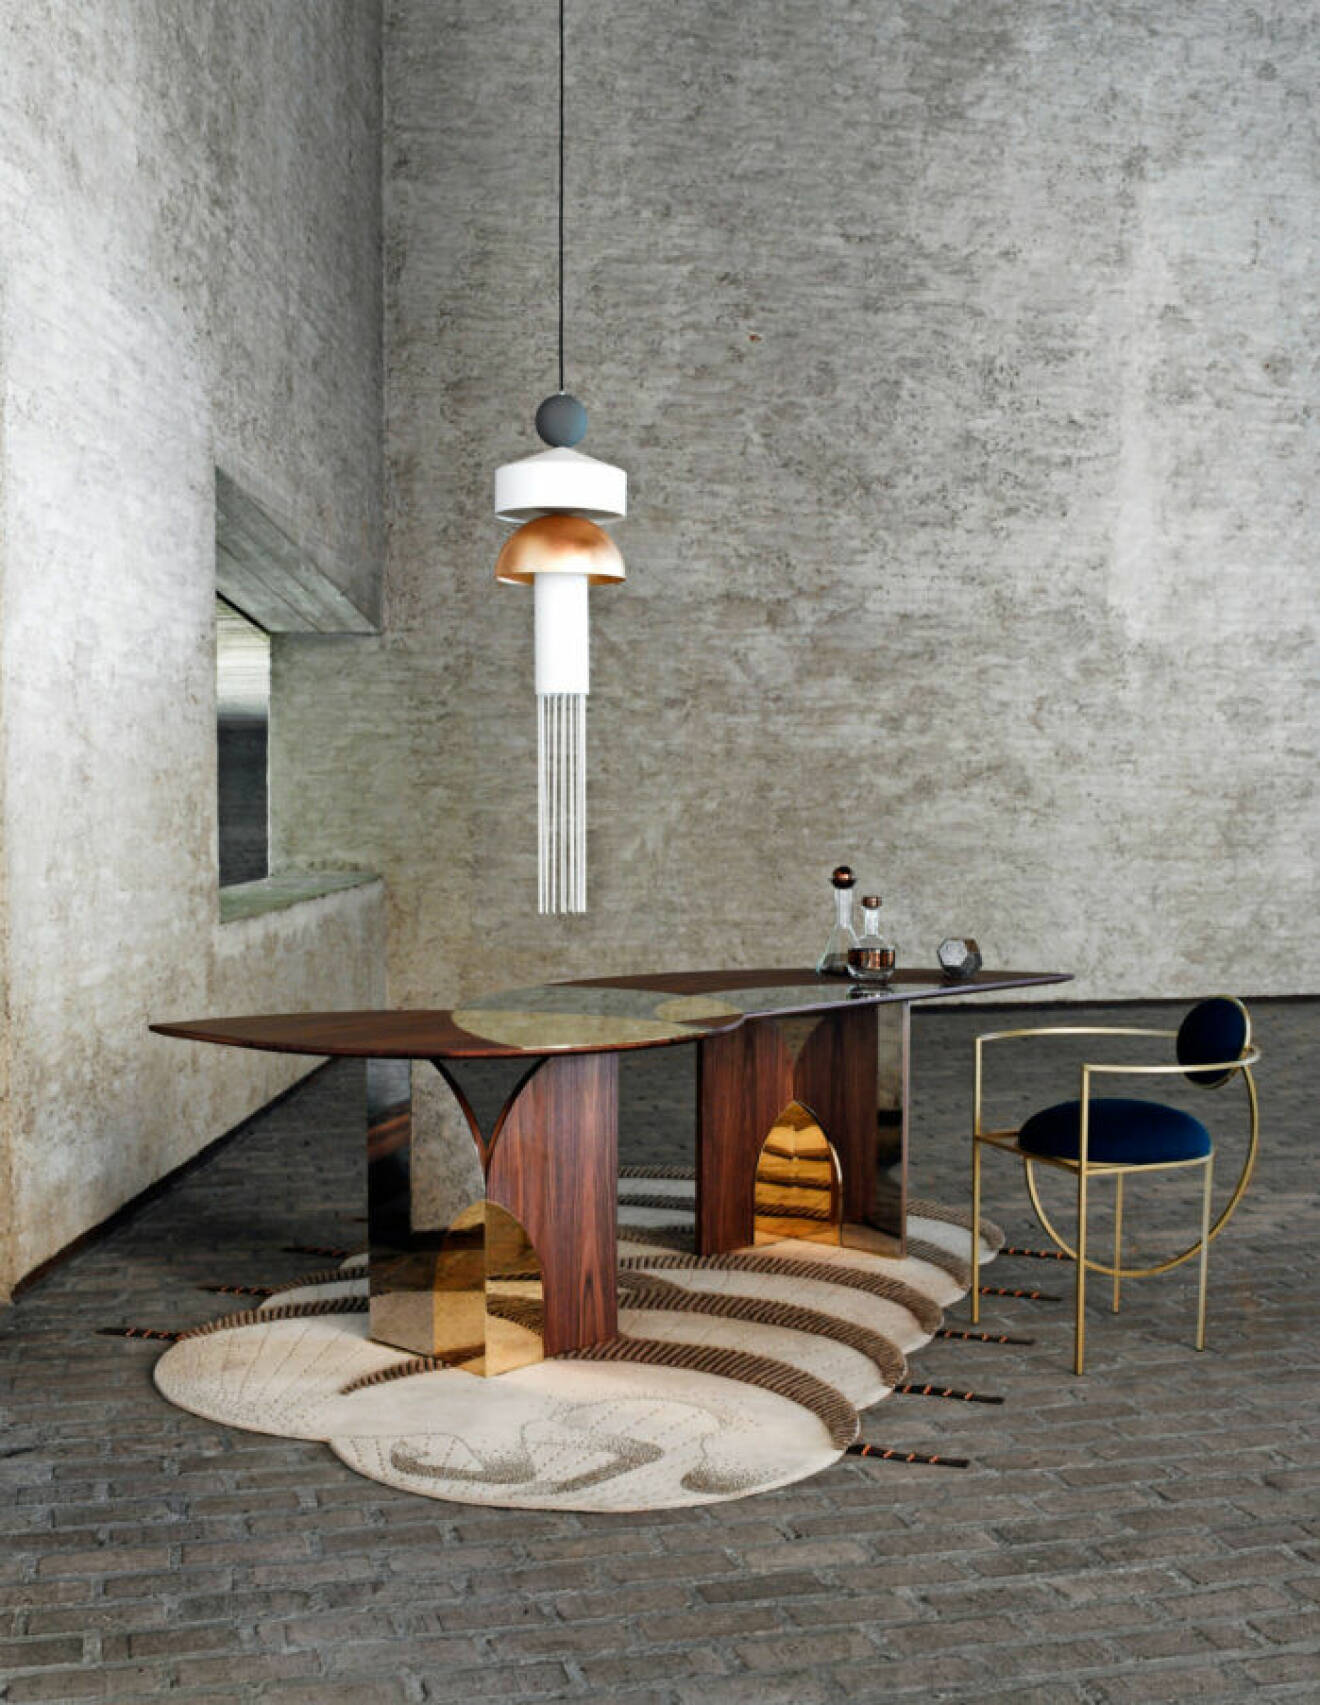 Matbord från Sèlene van Emmemobili på en naturmönstrad, geometrisk matta i grått rum